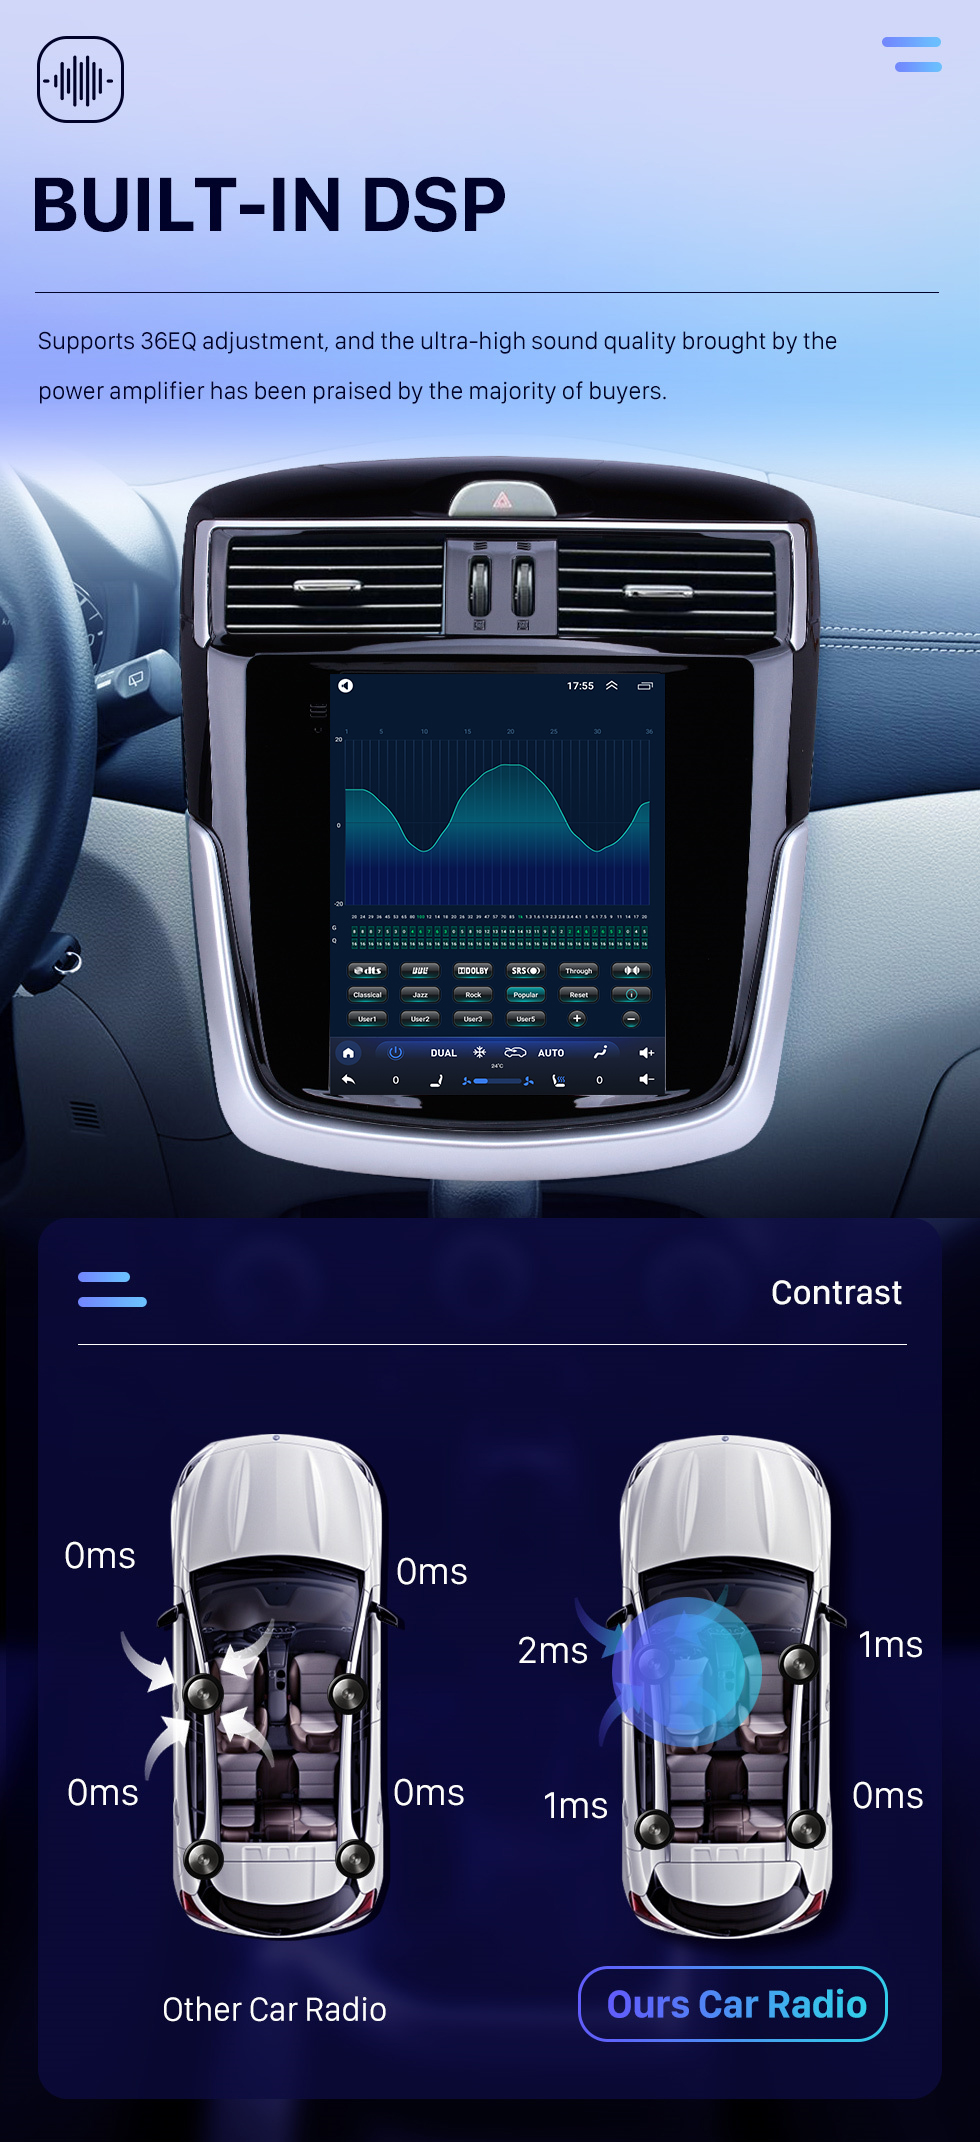 Seicane 9,7-дюймовый GPS-навигатор Android 10.0 для Nissan Tiida 2016 года с сенсорным экраном HD Bluetooth AUX с поддержкой Carplay DVR OBD2